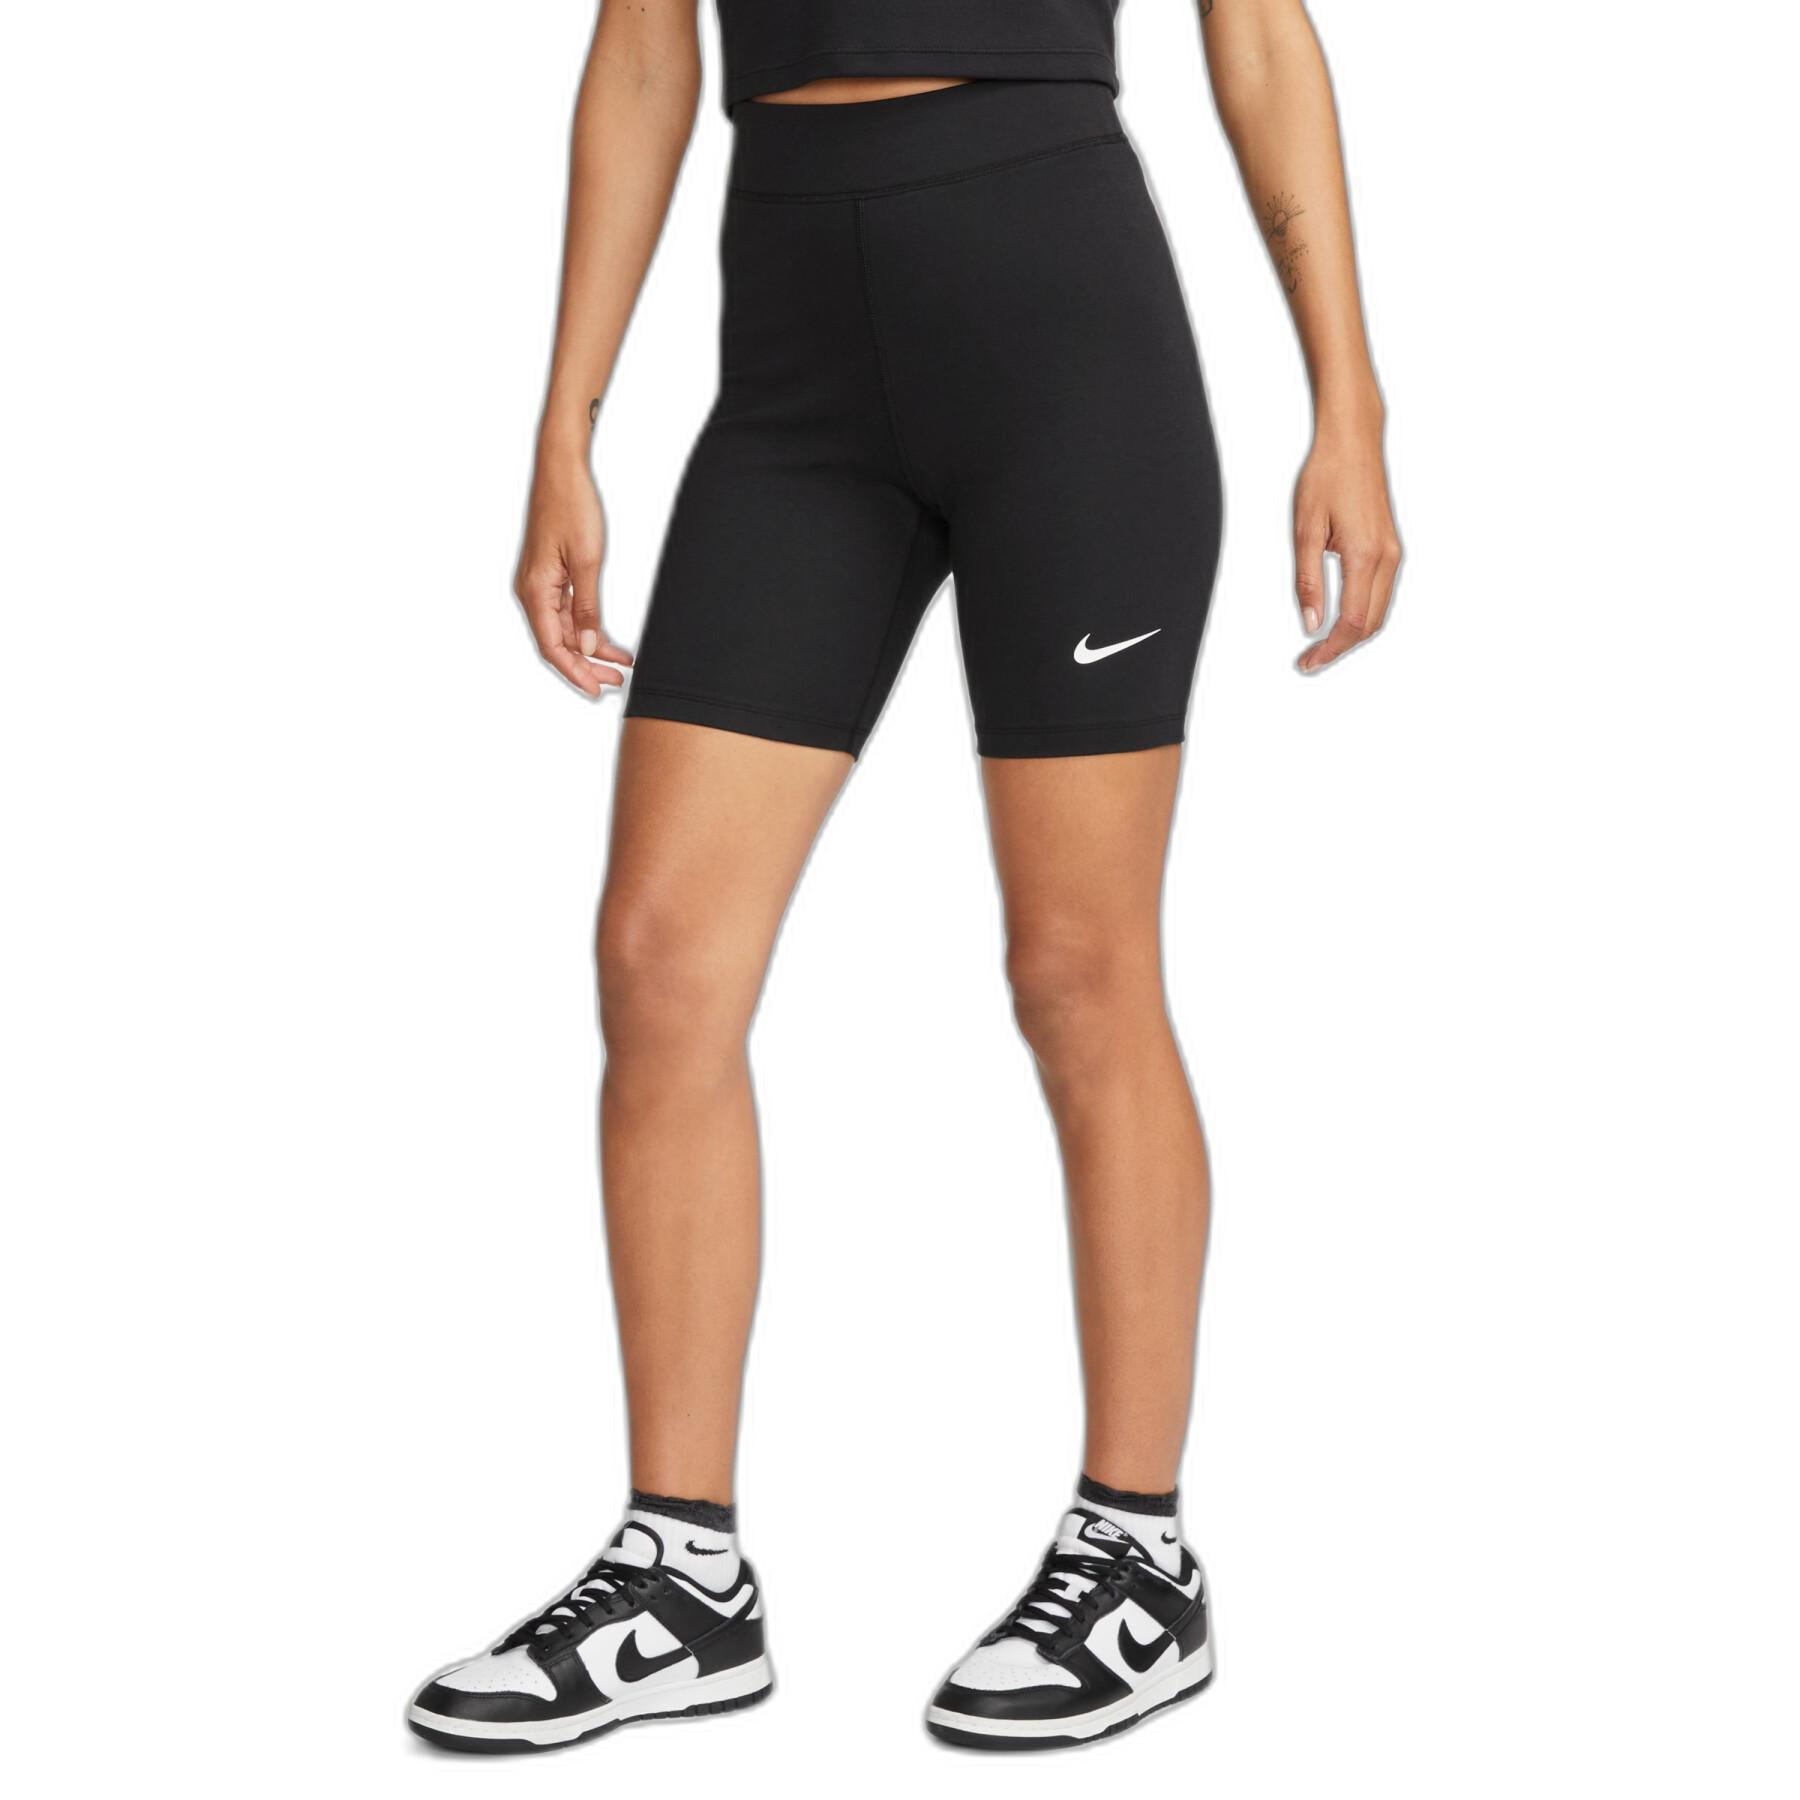 Calções de cintura alta para mulheres Nike Classics 8In